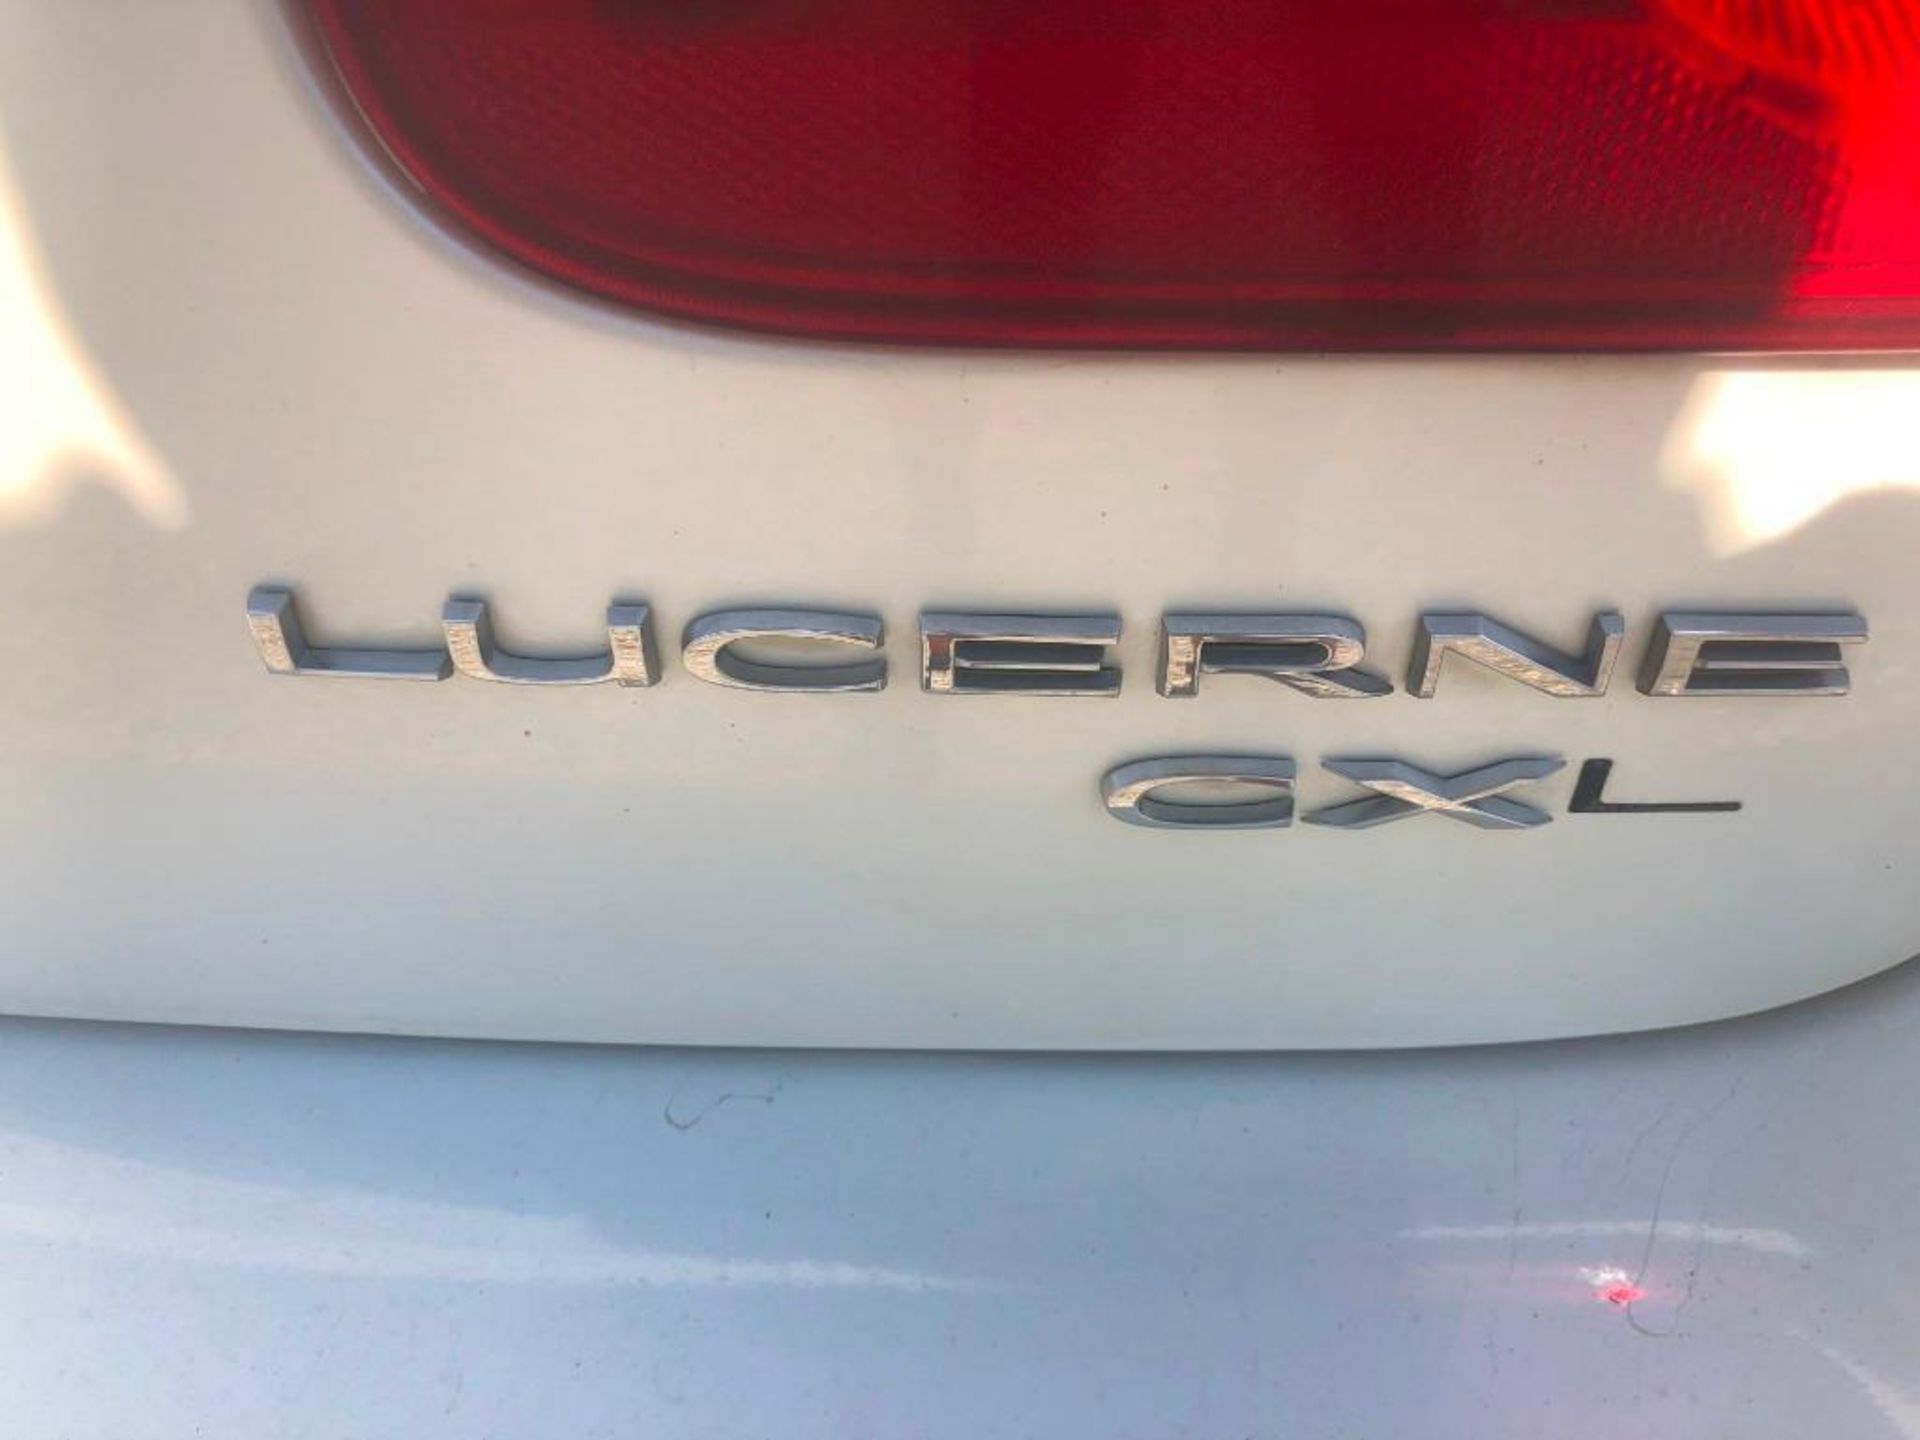 2010 Buick Lucerne CXL, VIN #1G4HC5EM8AU137907, 236956 Miles, Model Lucerne CXL, V6, Automatic, Dual - Image 5 of 17